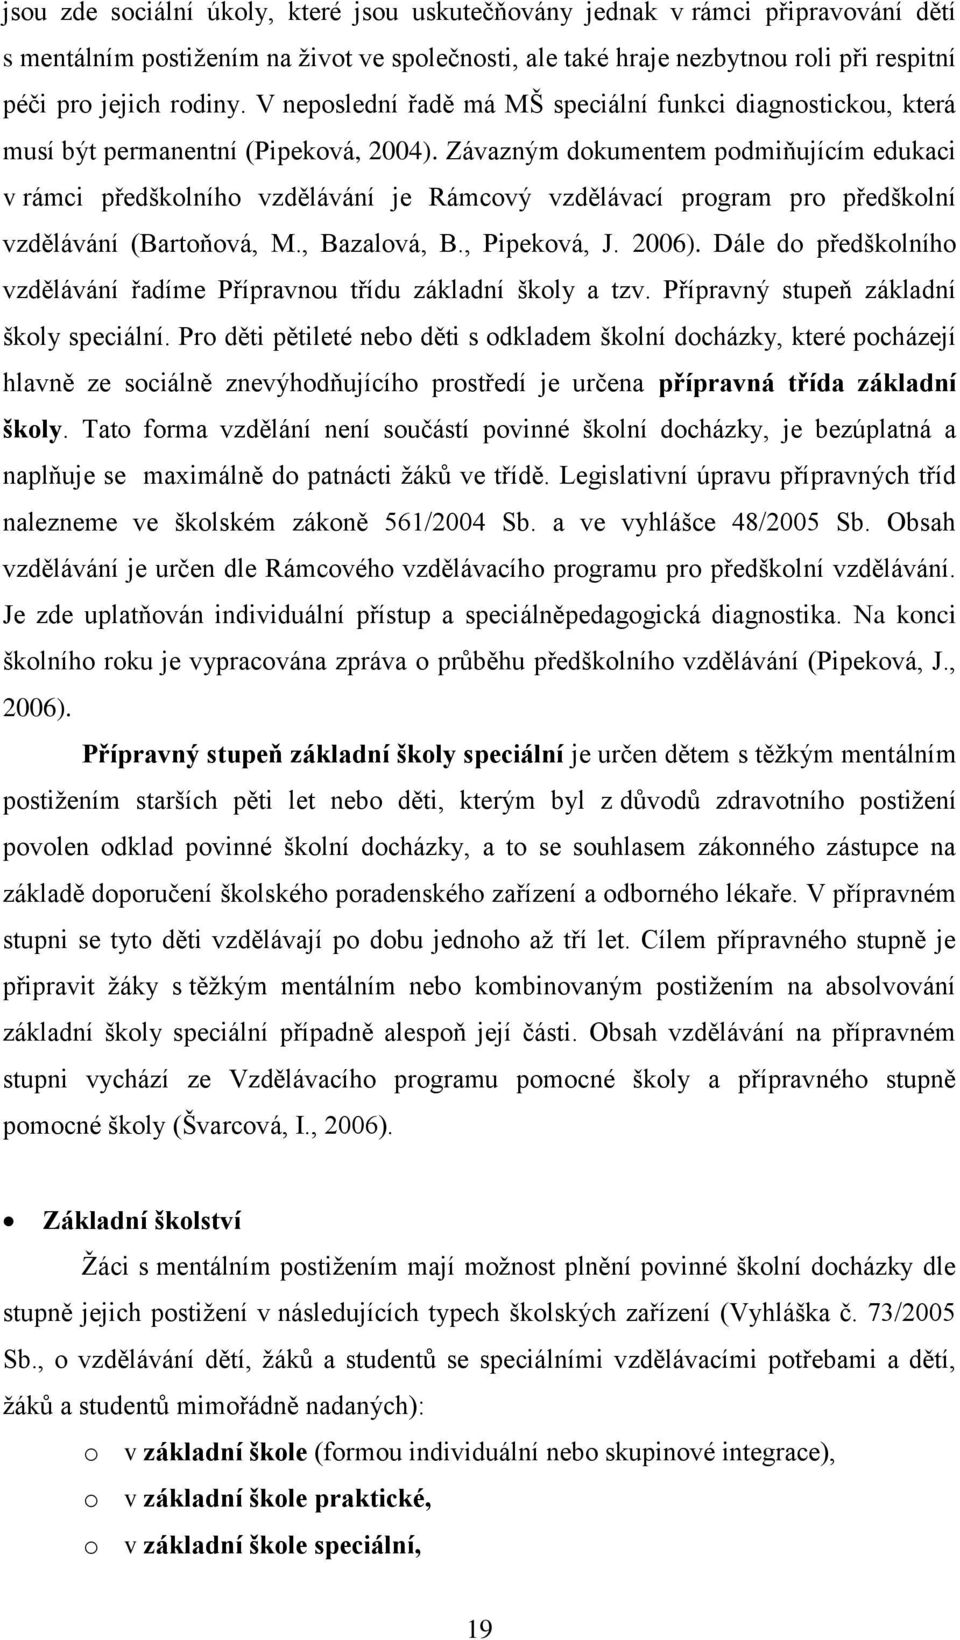 Závazným dokumentem podmiňujícím edukaci v rámci předškolního vzdělávání je Rámcový vzdělávací program pro předškolní vzdělávání (Bartoňová, M., Bazalová, B., Pipeková, J. 2006).